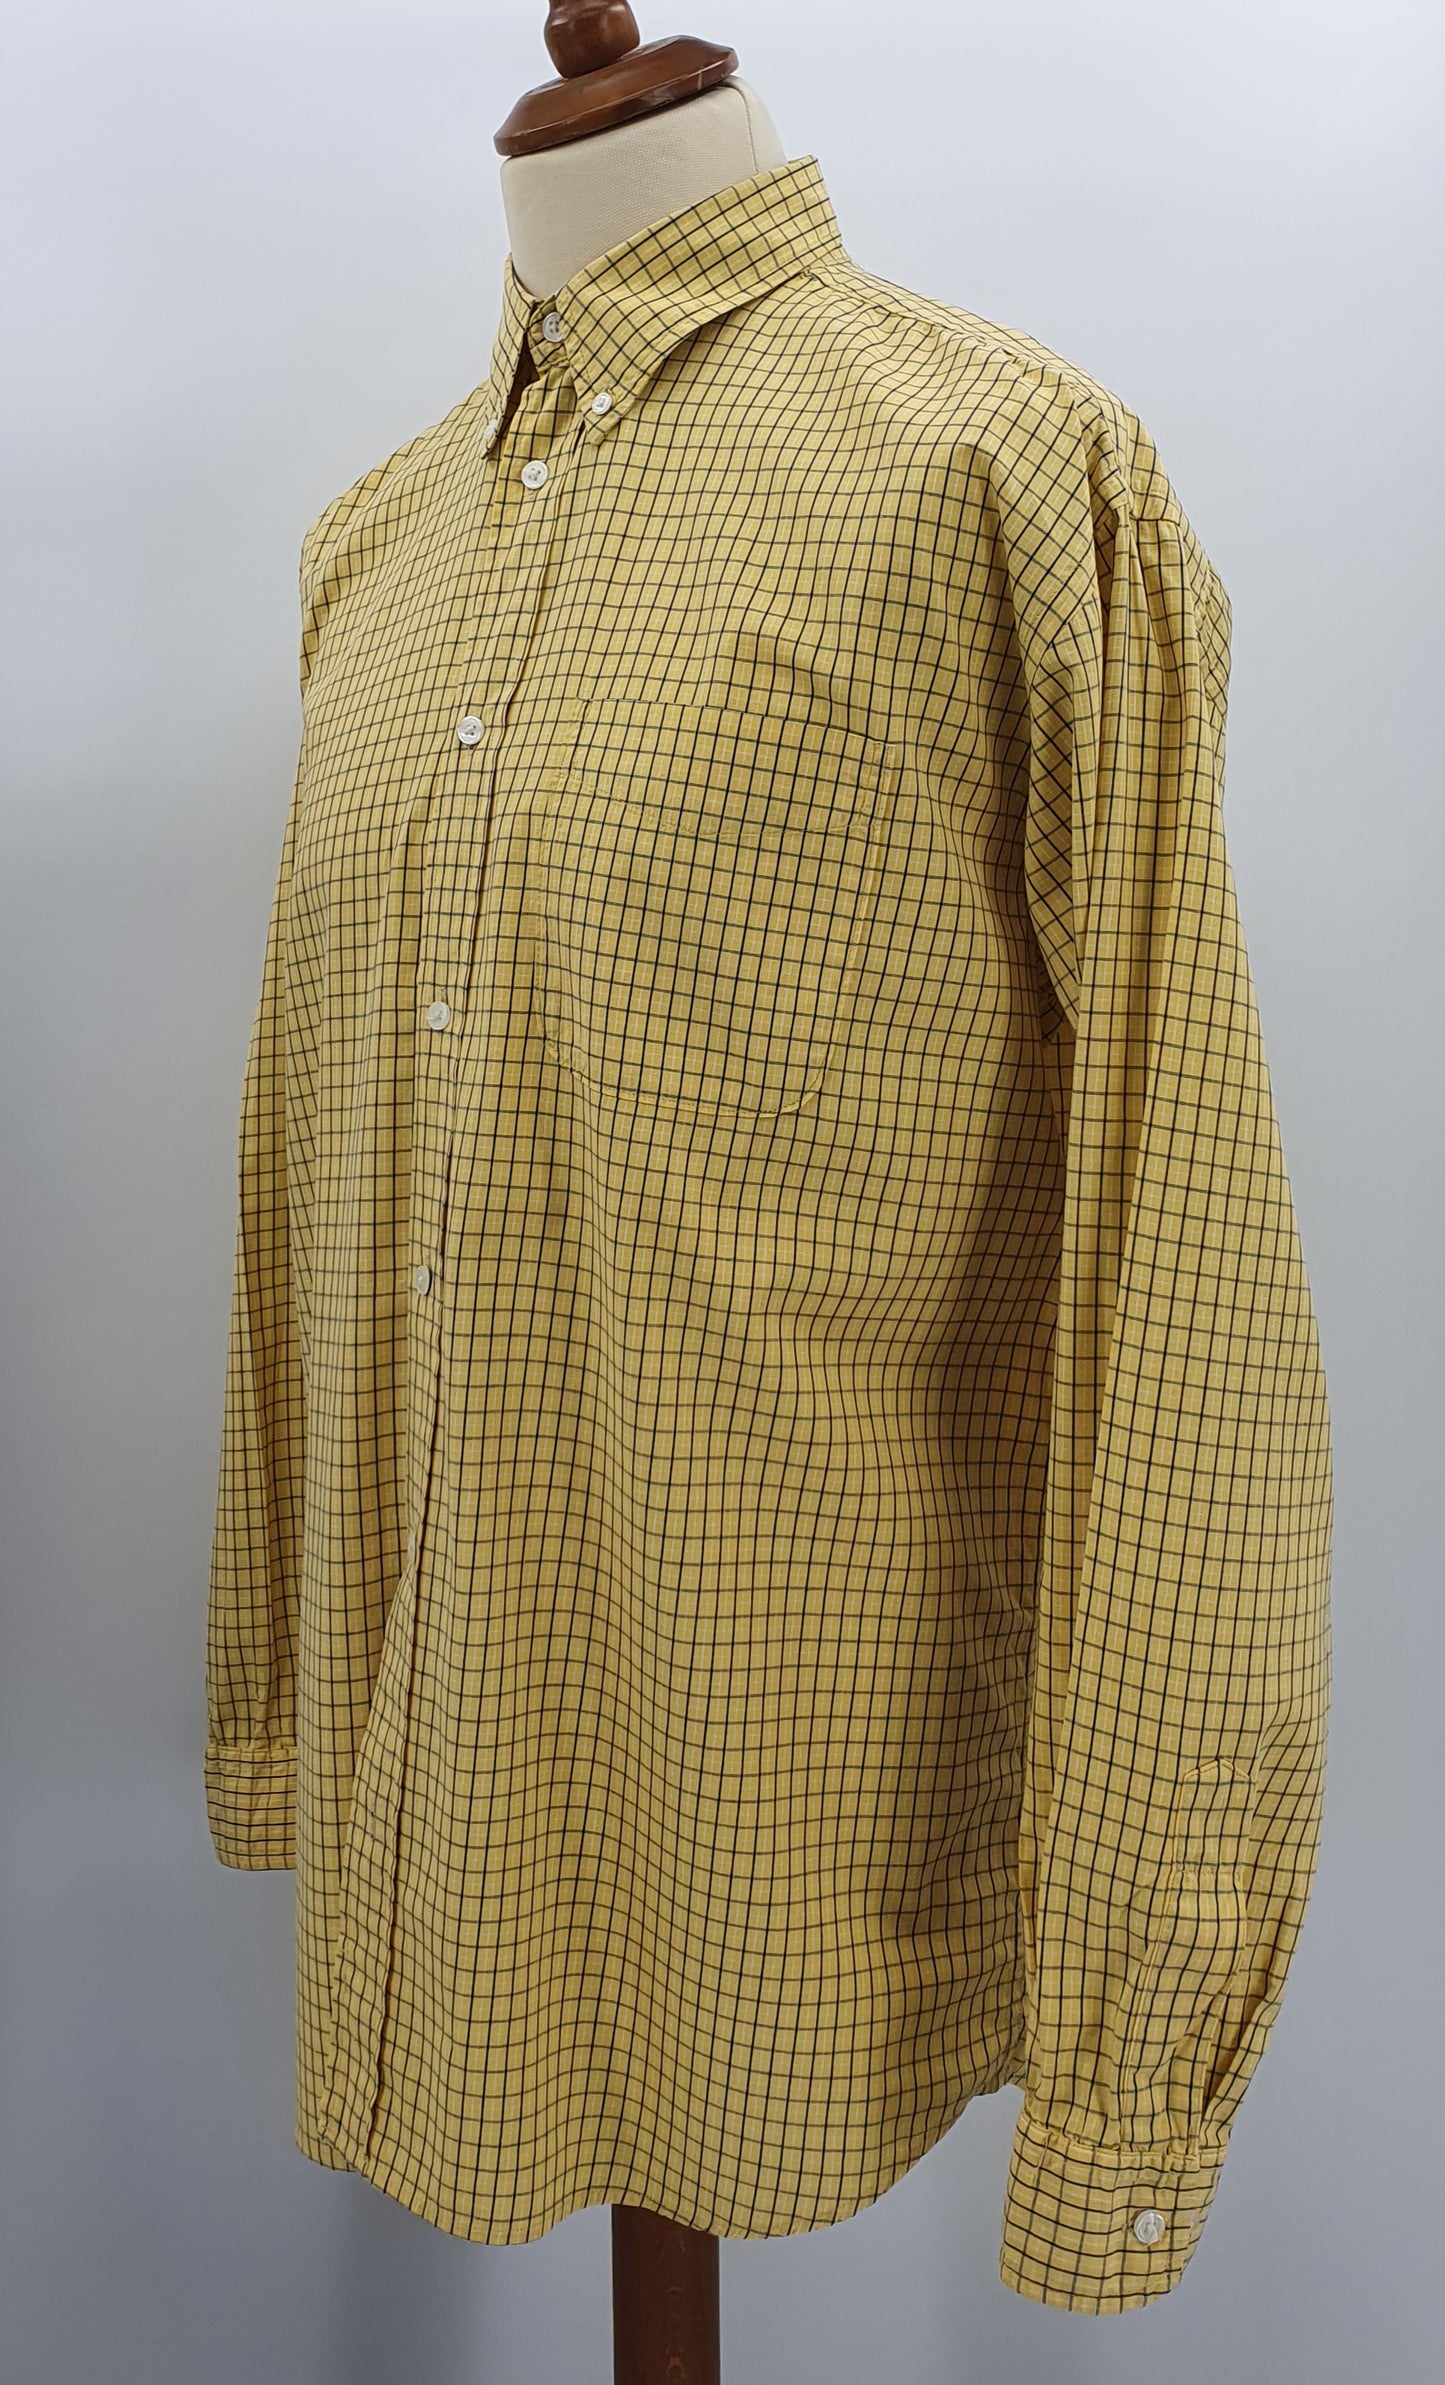 Reflex Classic, miesten keltainen paitapusero, 90-luku, koko (L)XL